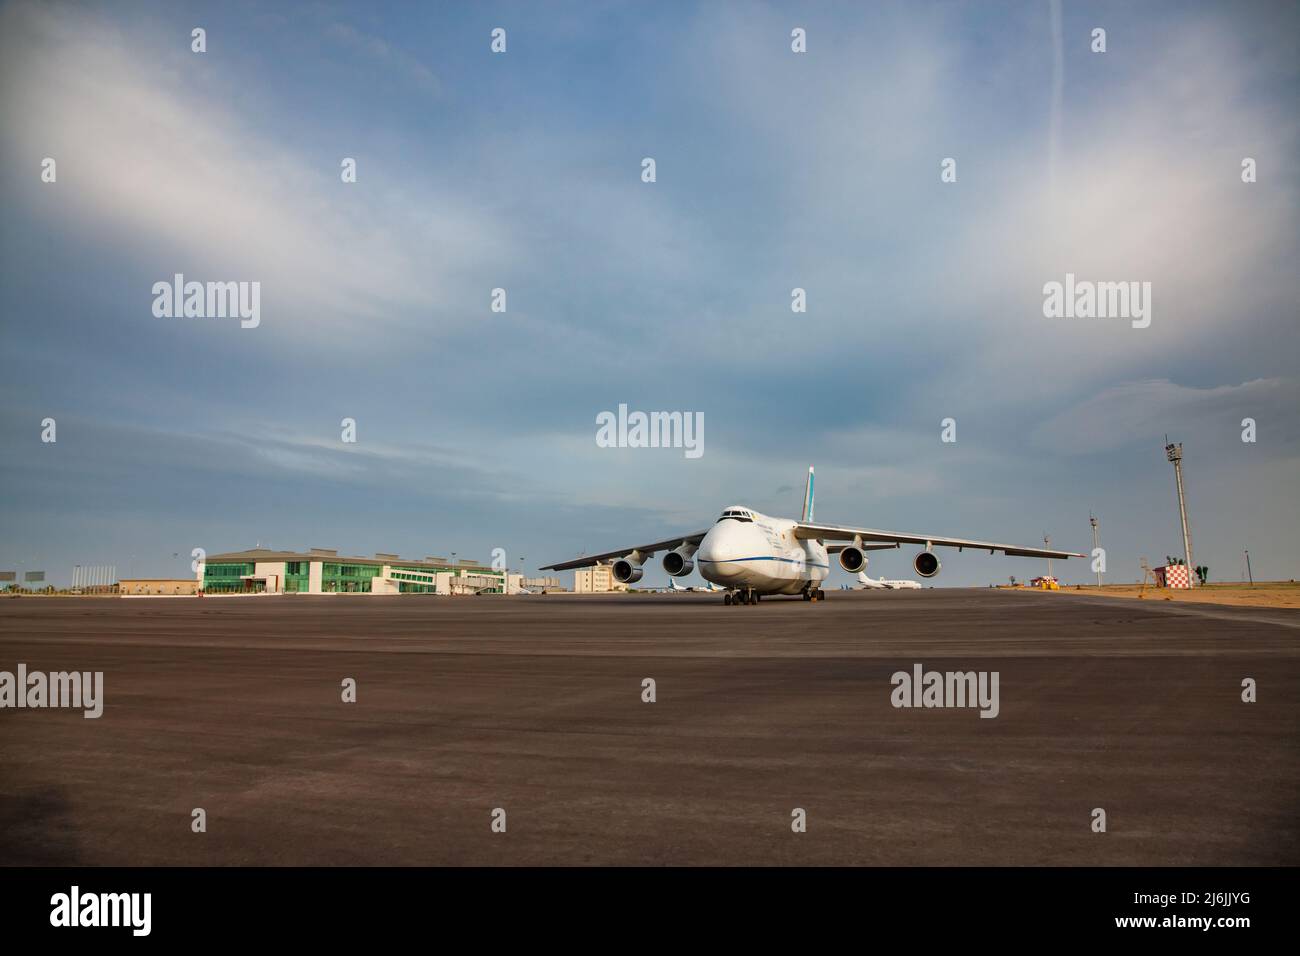 Aktau, Kasachstan - 21. Mai 2012: Internationaler Flughafen Aktau. Großes schweres sowjetisches Frachtflugzeug Antonov-124 Ruslan auf dem Boden. Schöner blauer Himmel mit Klo Stockfoto